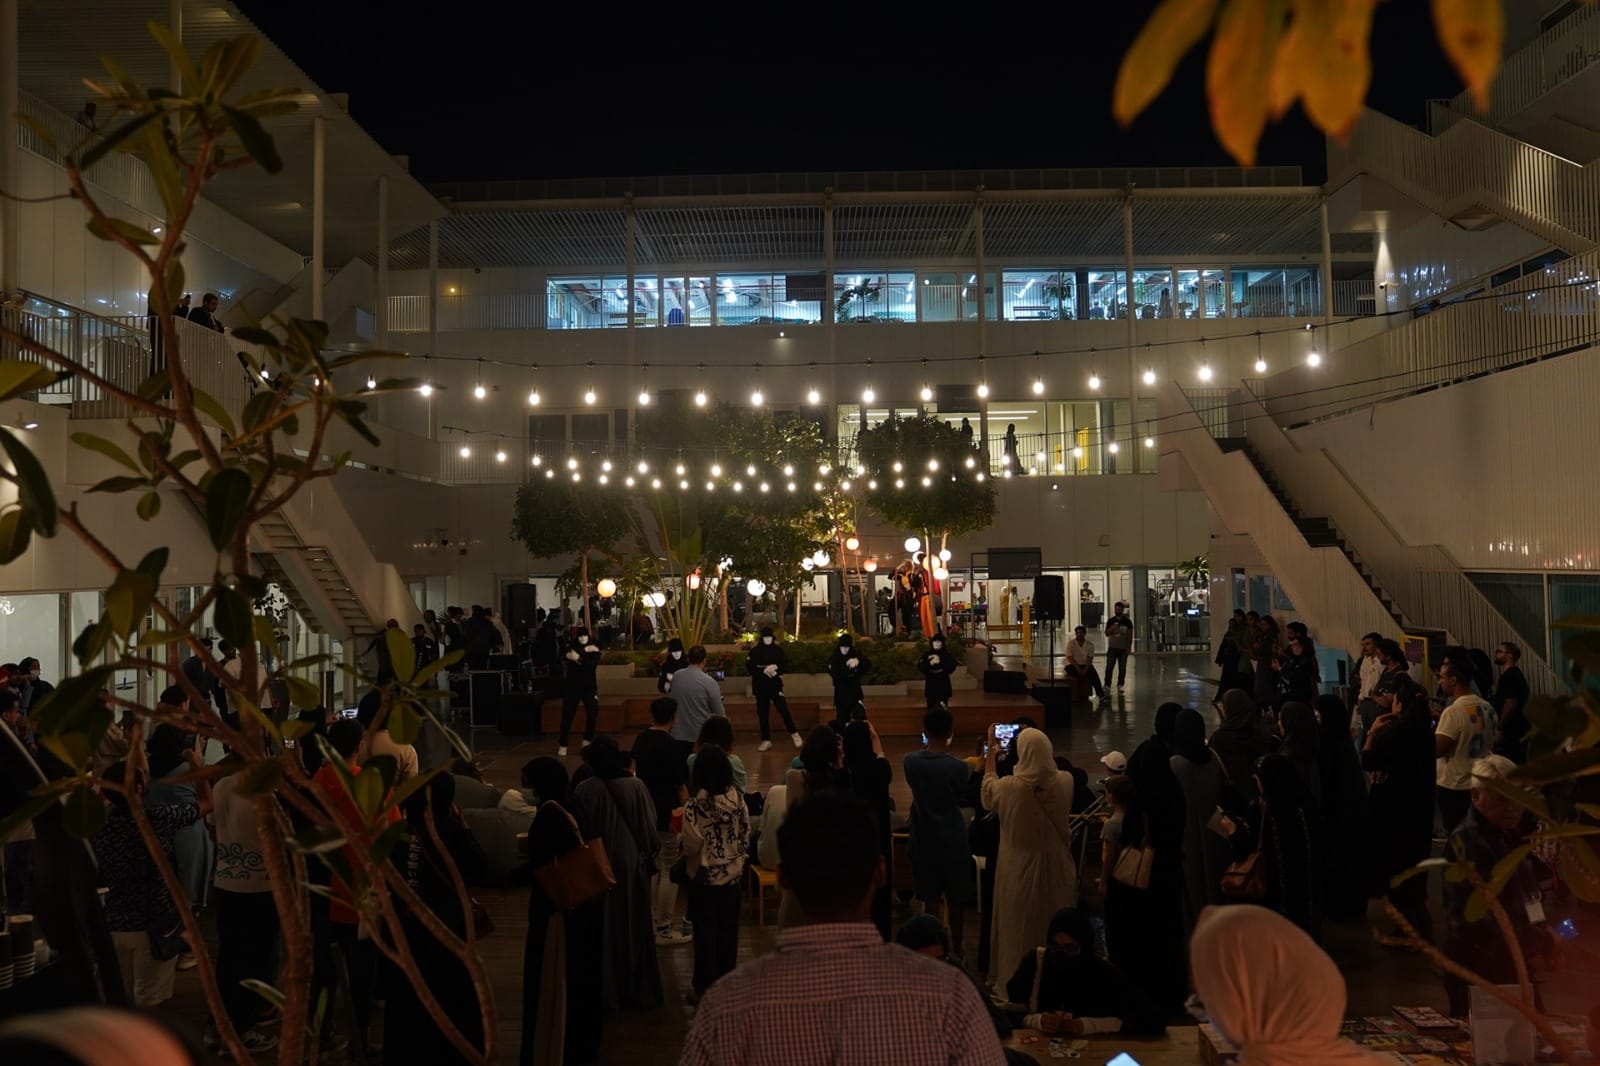 ليالي رمضان في حي جميل: وجهة ثقافية تُنعش الروح وتُلهم الإبداع